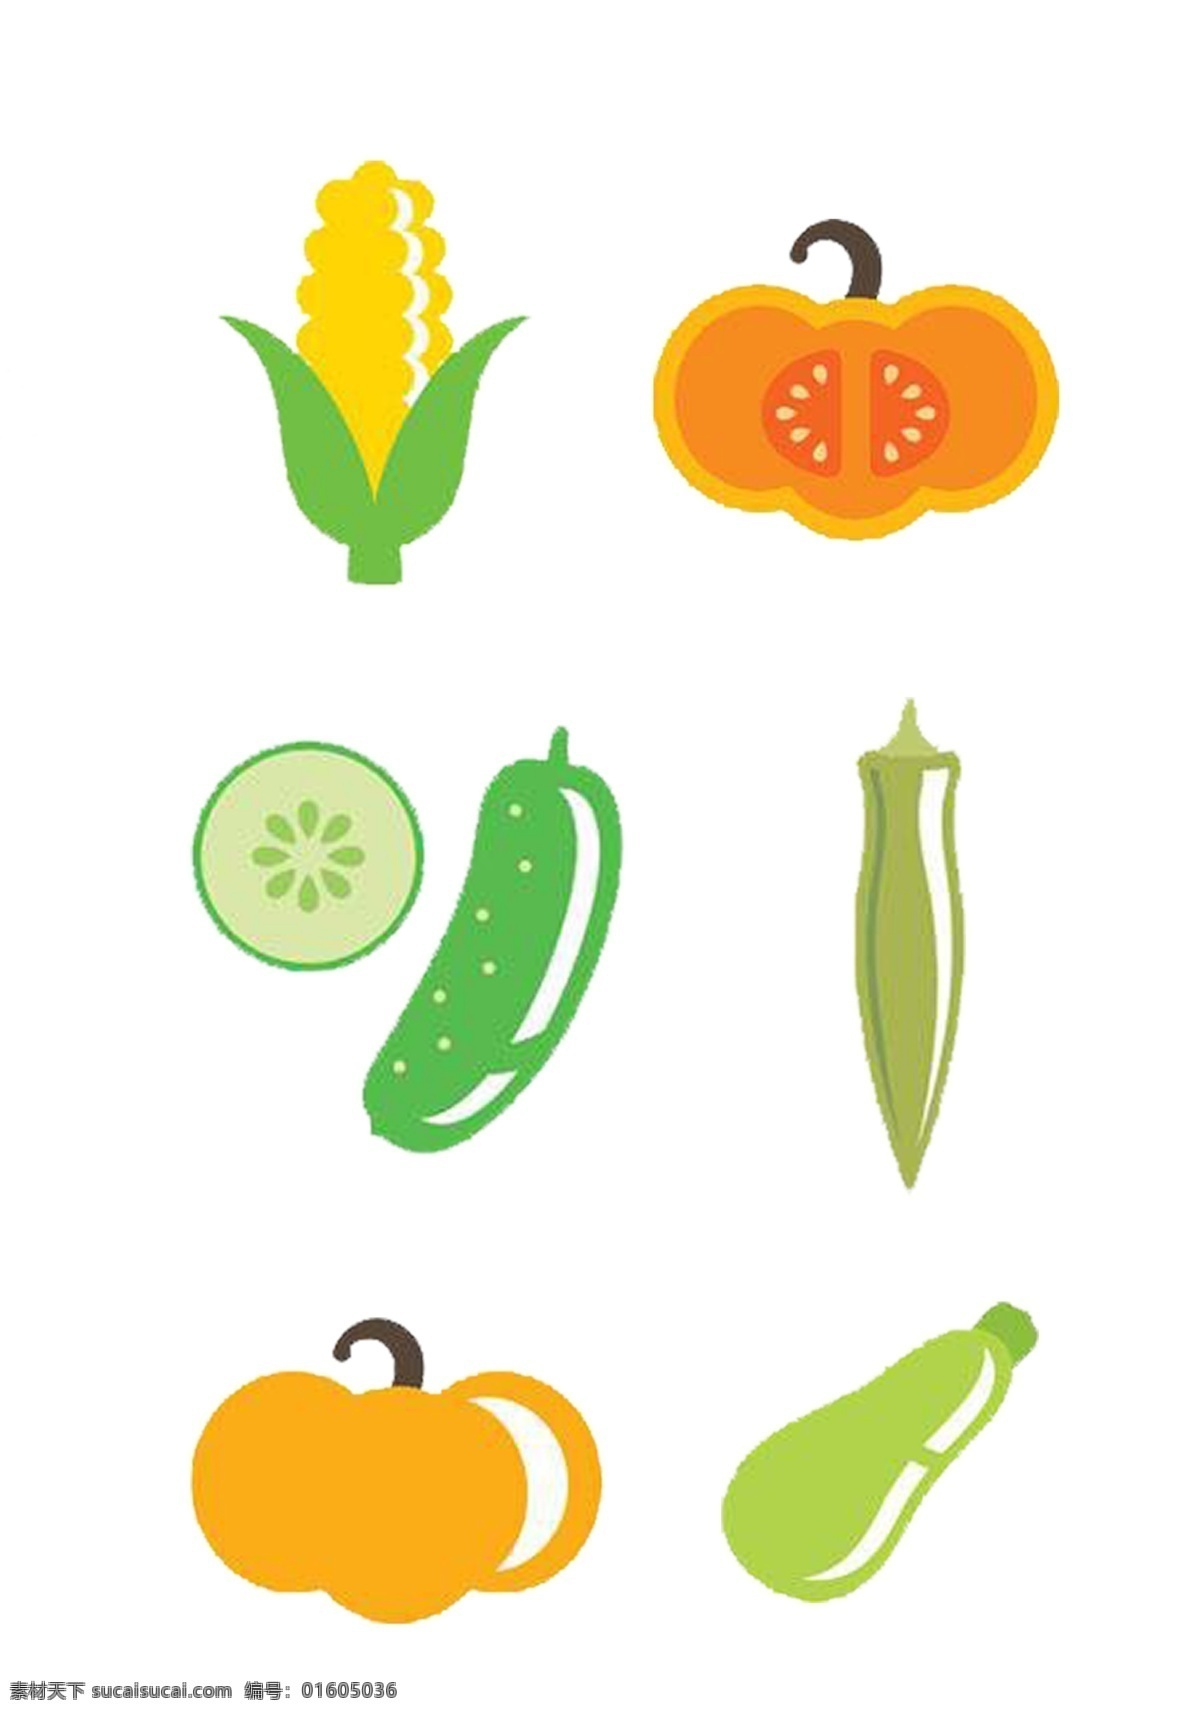 蔬菜 卡通 亮色 图标素材 图标 玉米 南瓜 西葫芦 辣椒 南瓜侧面 可分开使用 可用于装饰 免抠 png格式